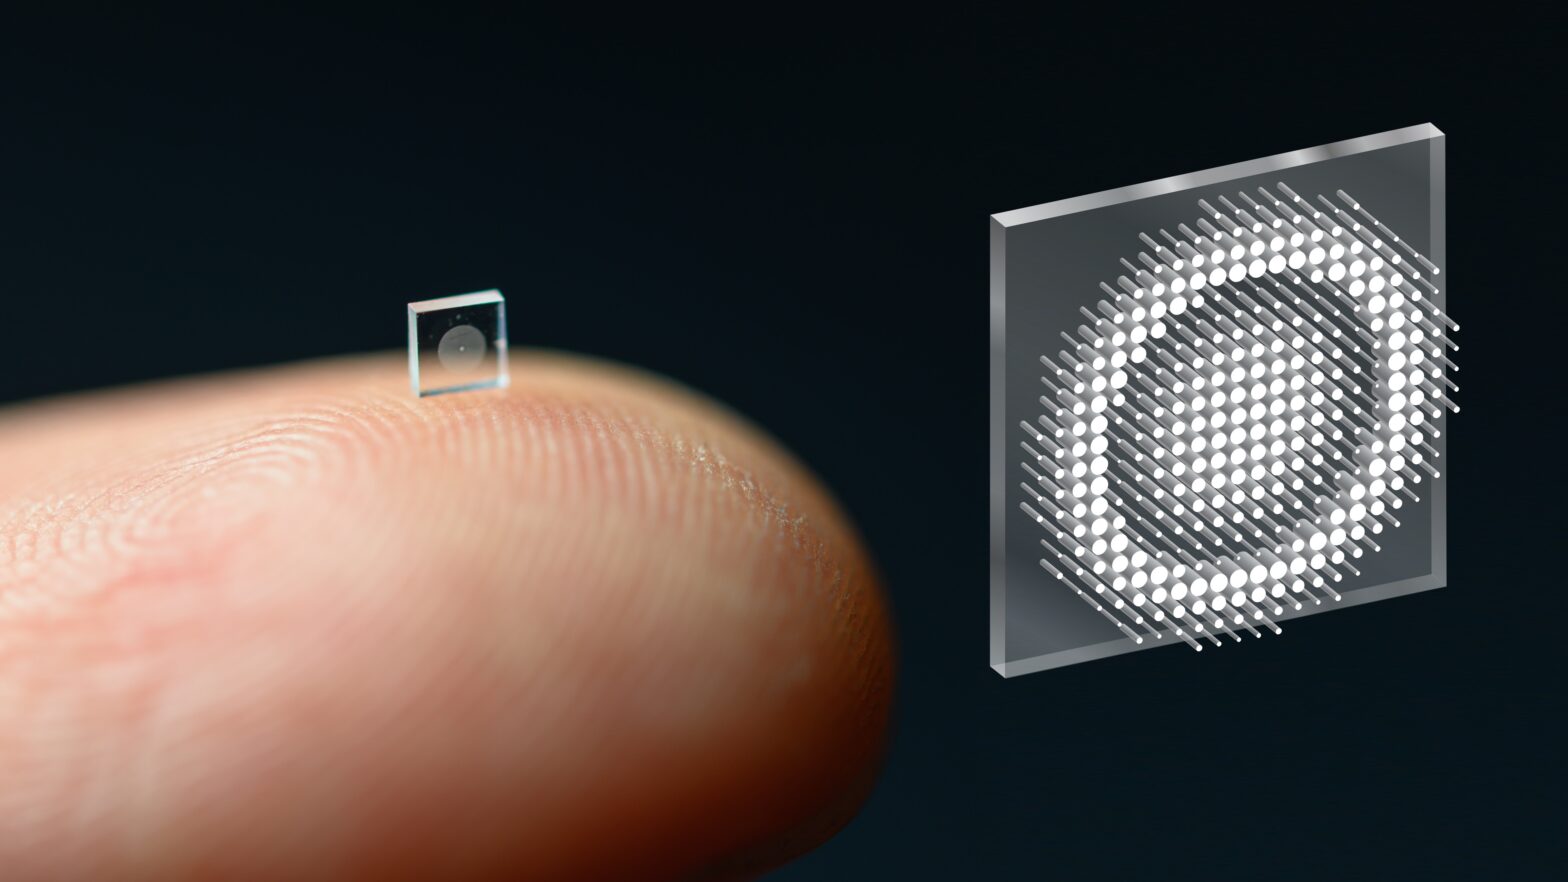 Chip-like camera on fingertip